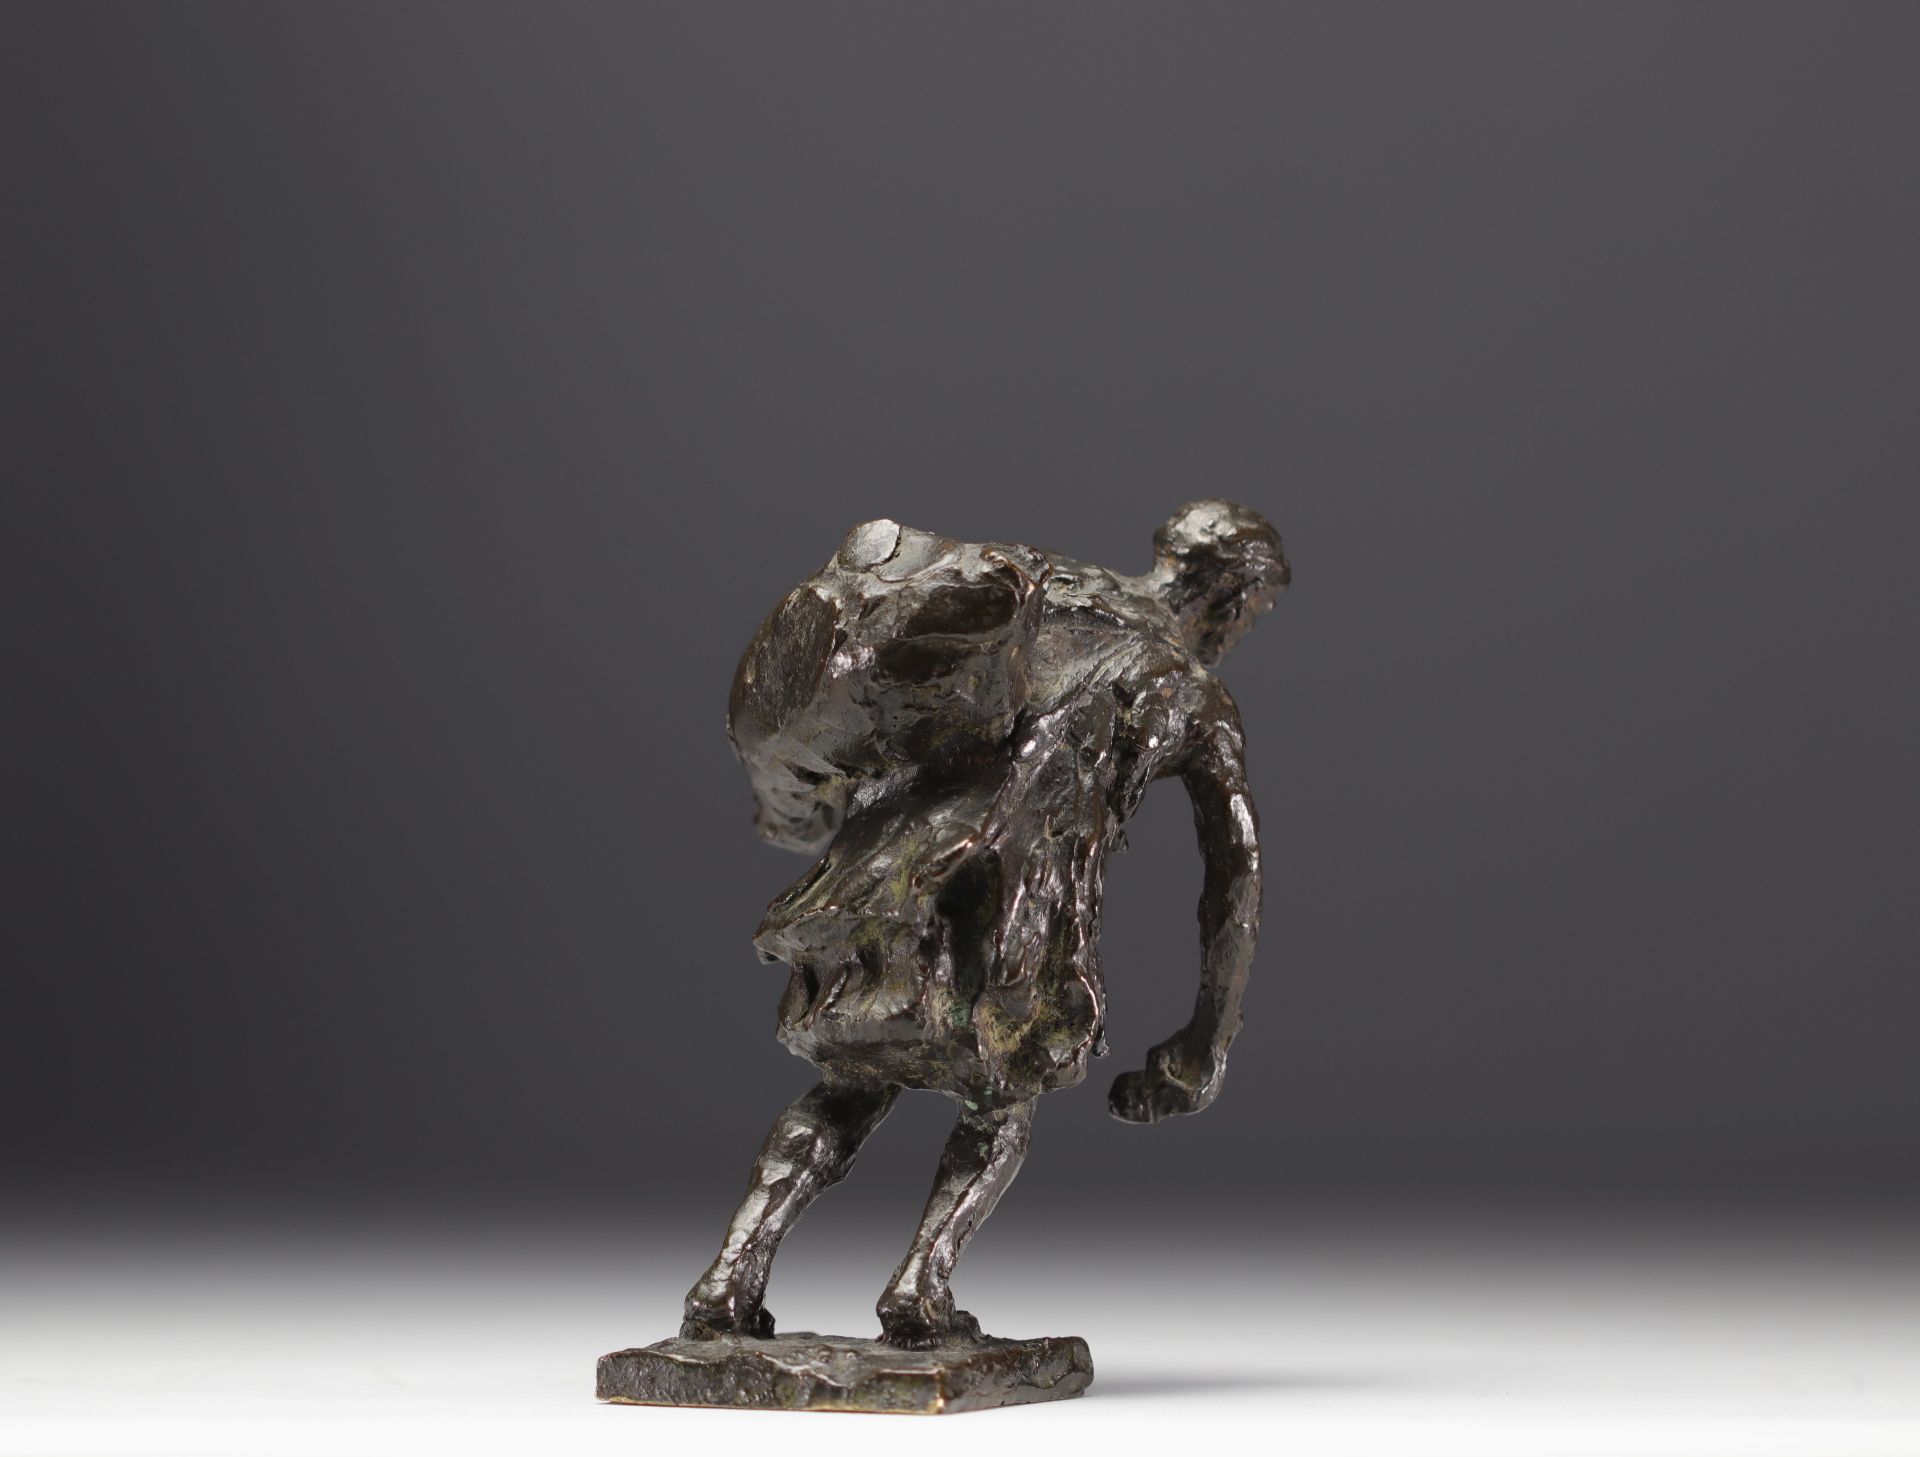 Gaston BROQUET (1880-1947) "The bag bearer" Orientalist bronze. - Image 5 of 5